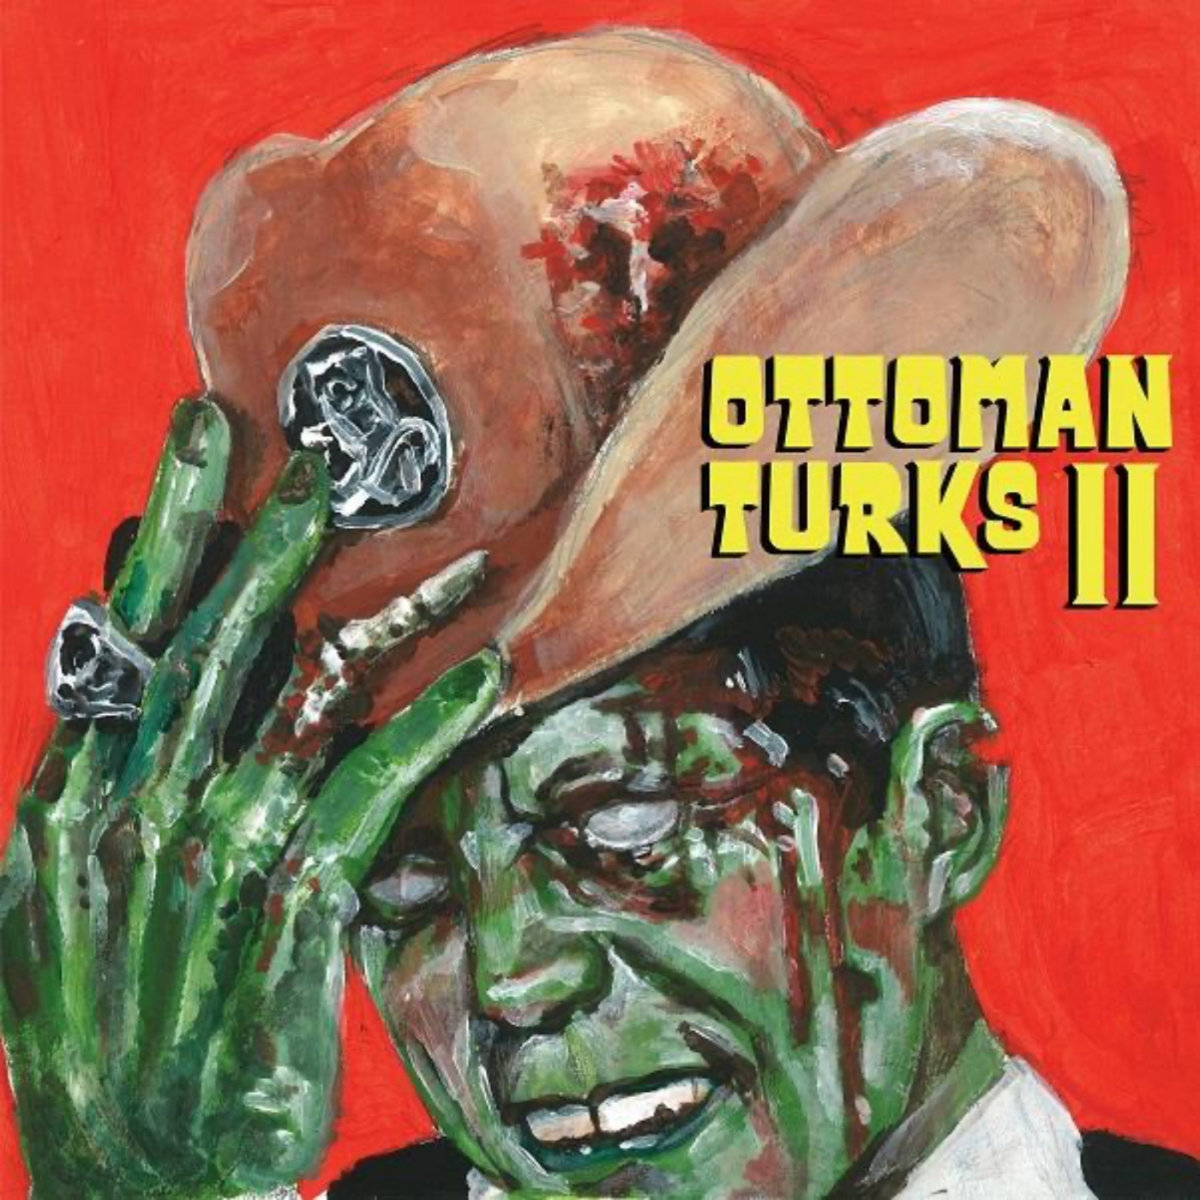 Ottoman Turks - Ottoman Turks II - LP